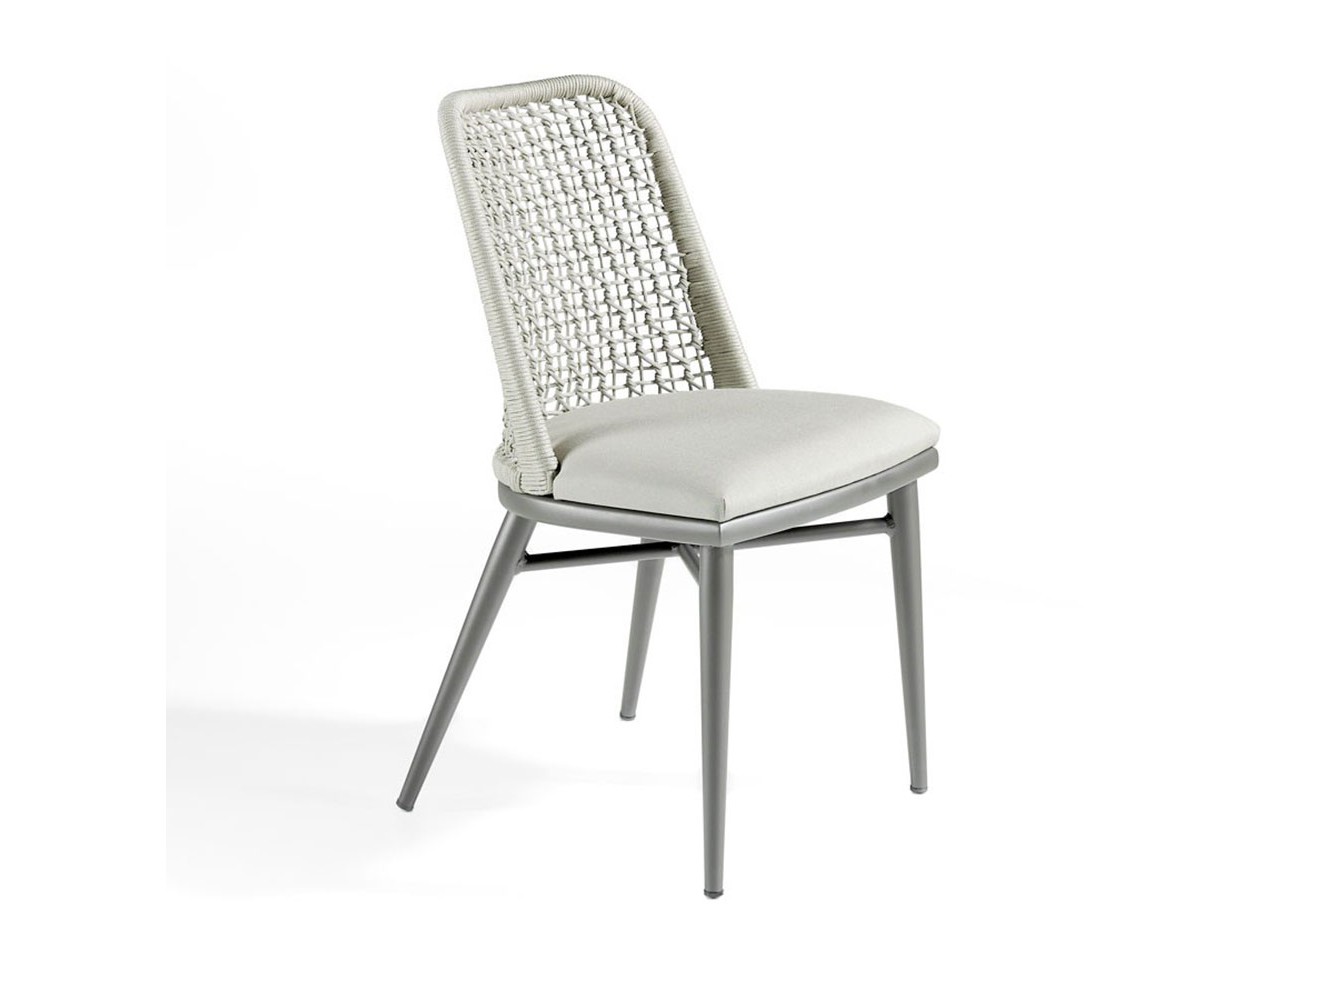 Perth Chair